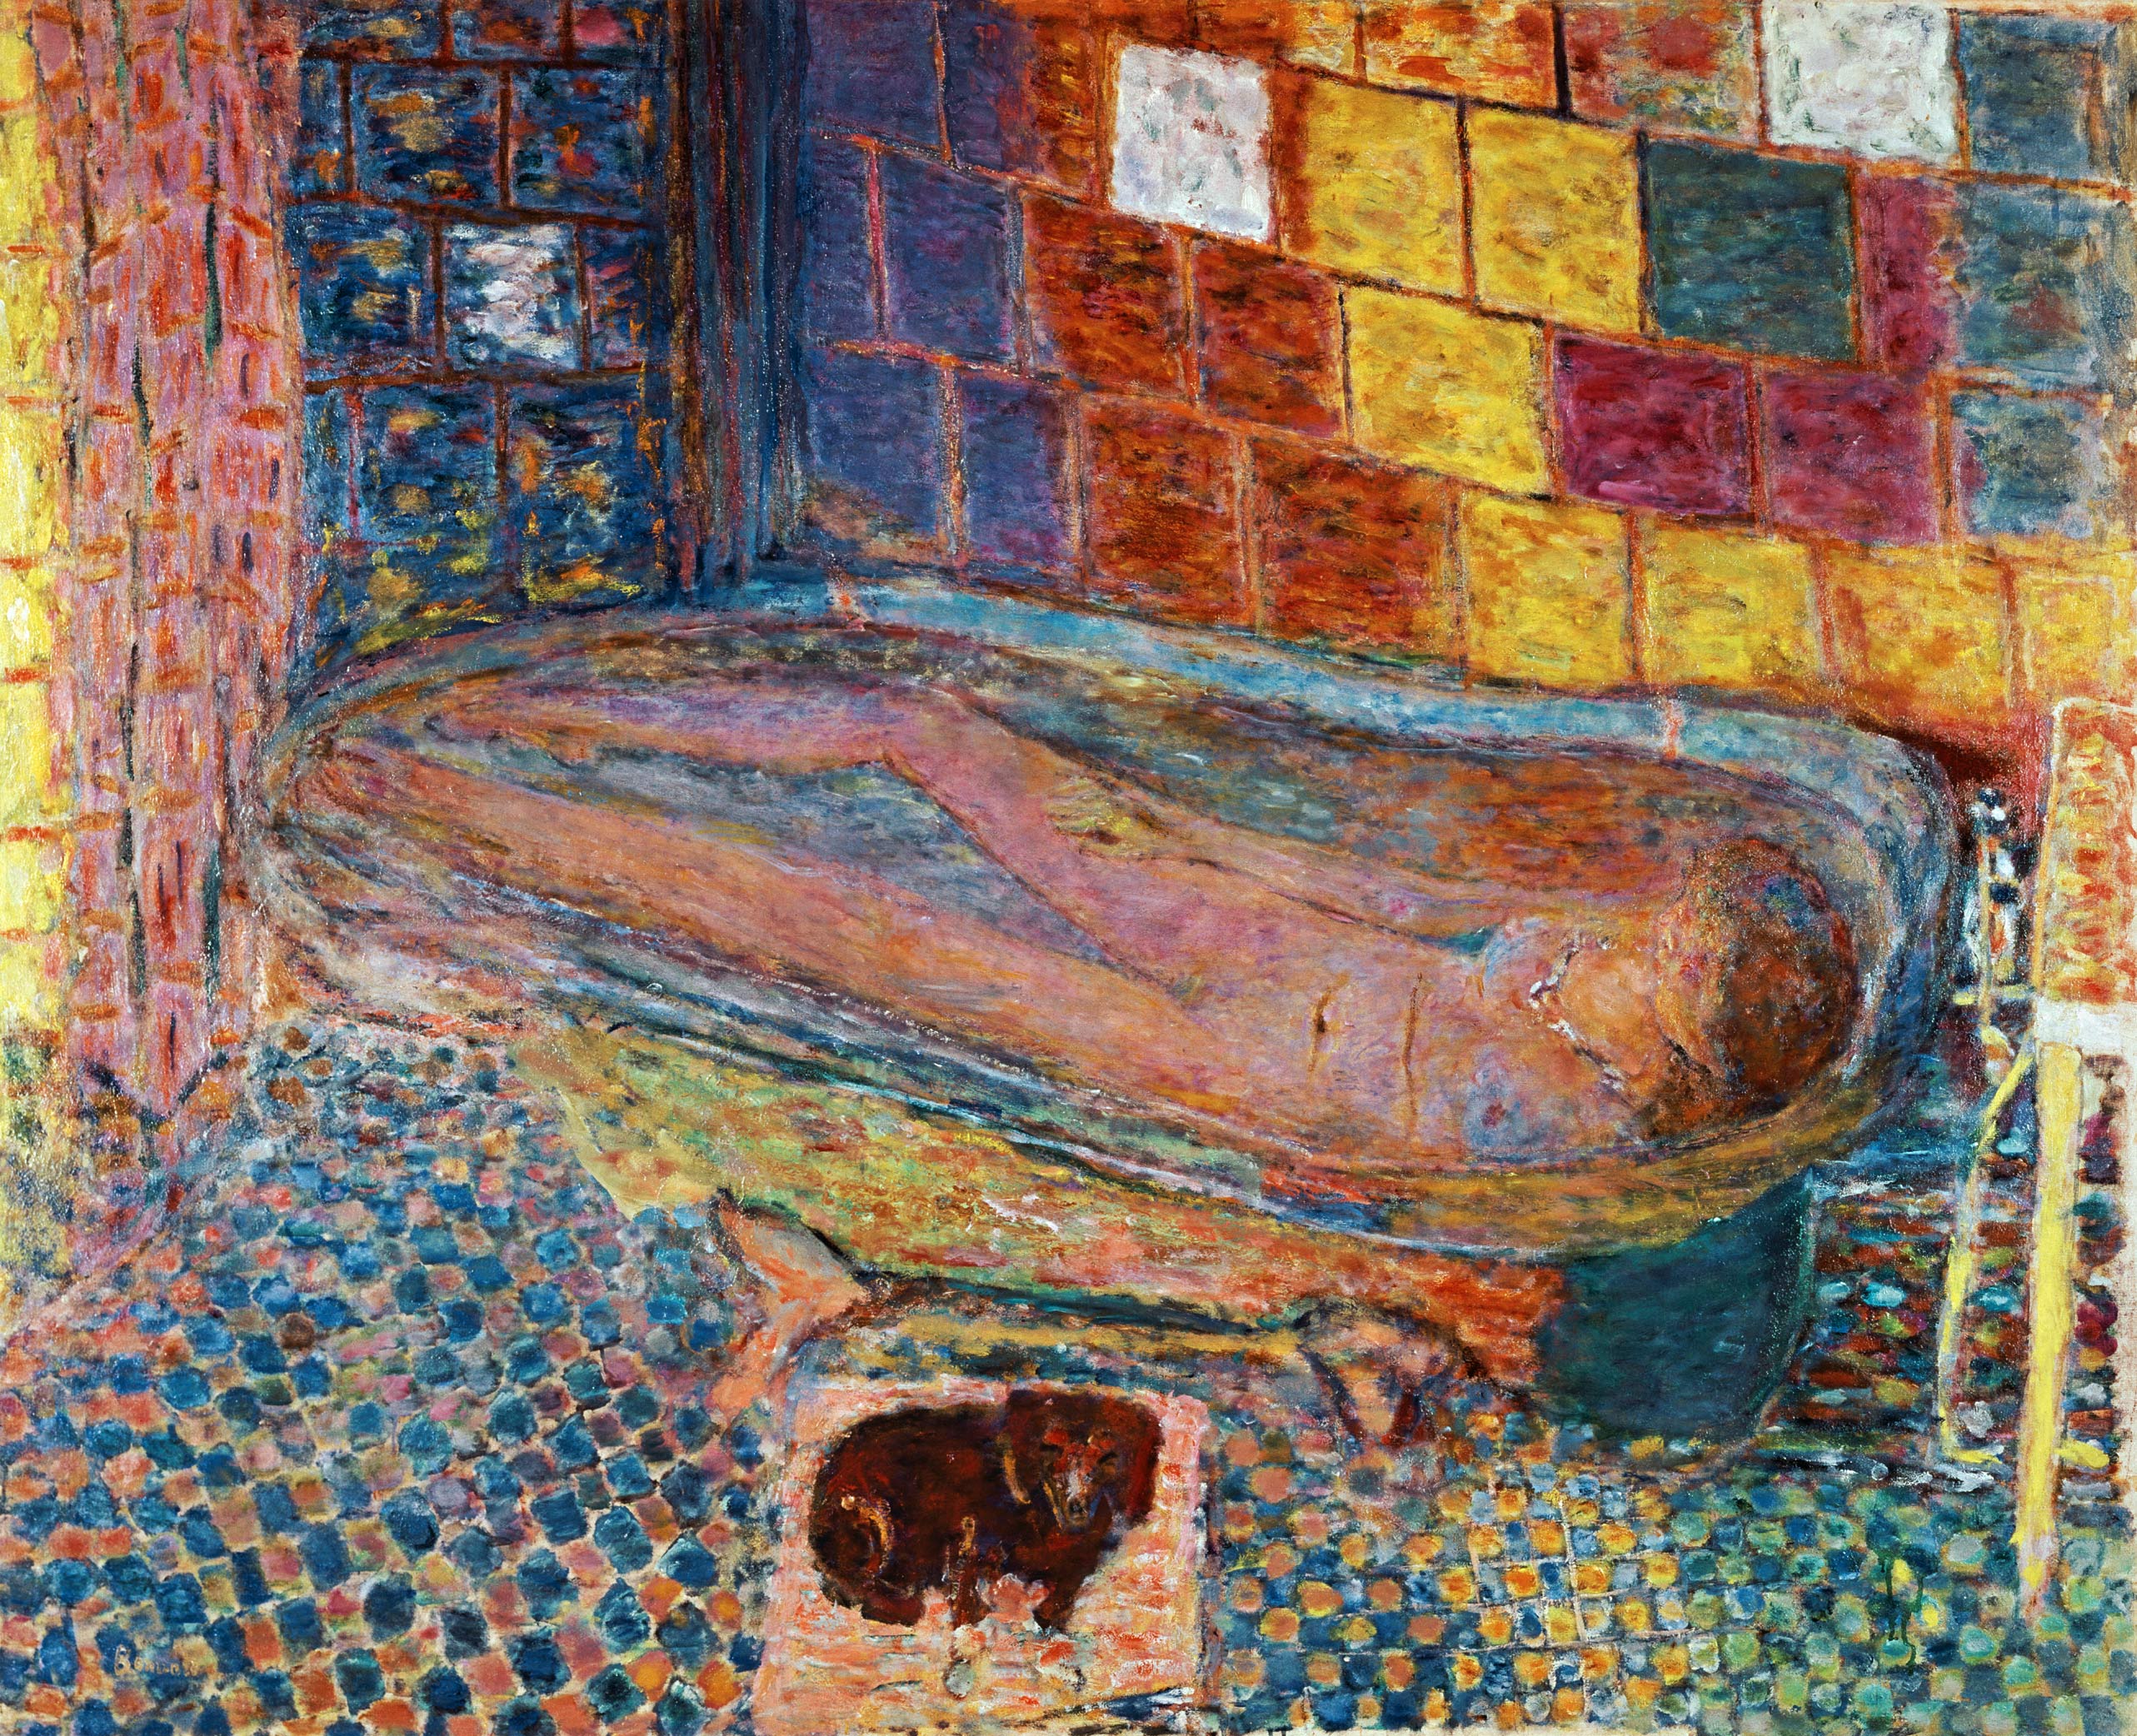 In the bathtub a Pierre Bonnard